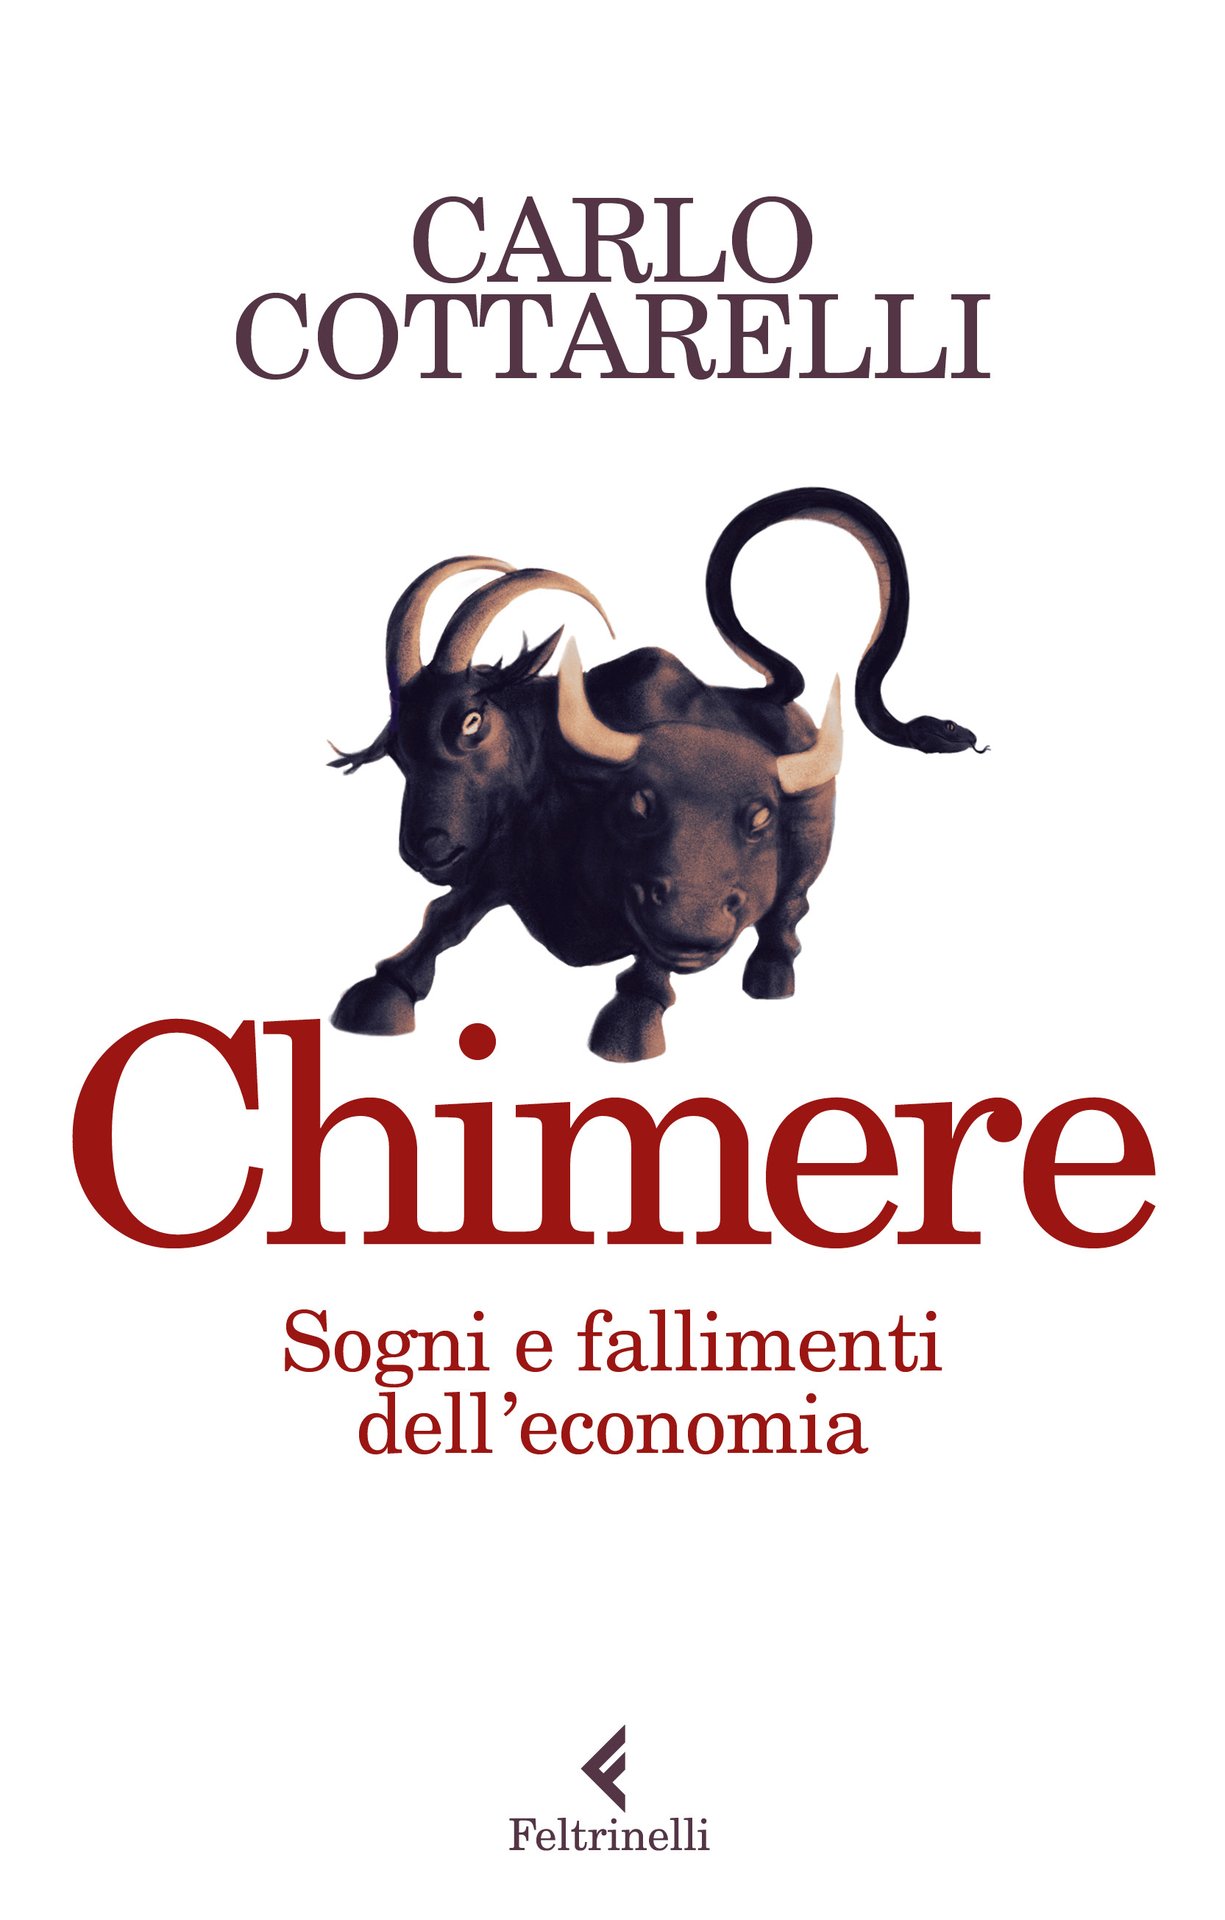 Carlo Cottarelli presenta Chimere. Sogni e fallimenti dell’economia al Teatro Franco Parenti